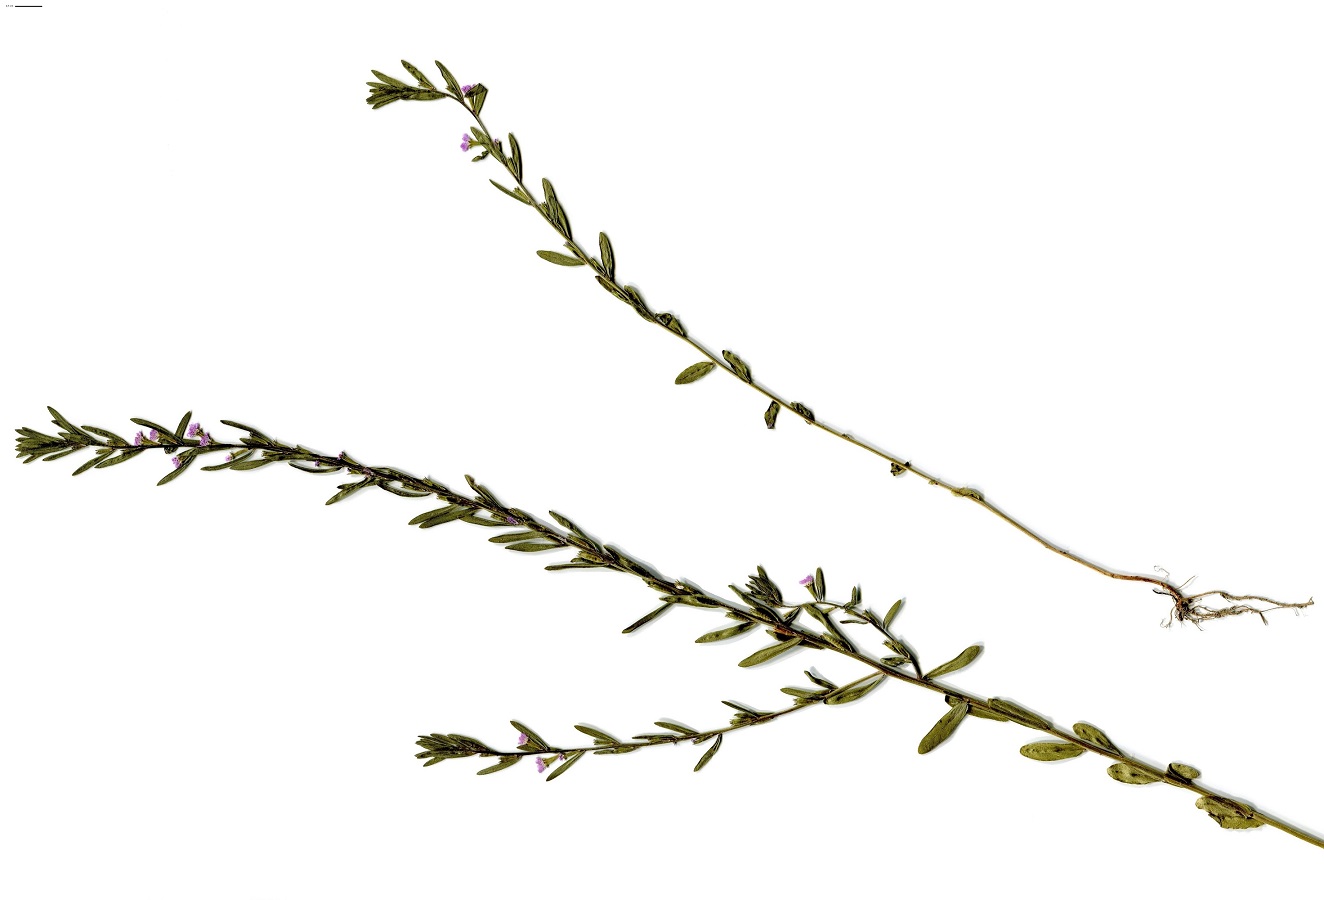 Lythrum hyssopifolia (Lythraceae)